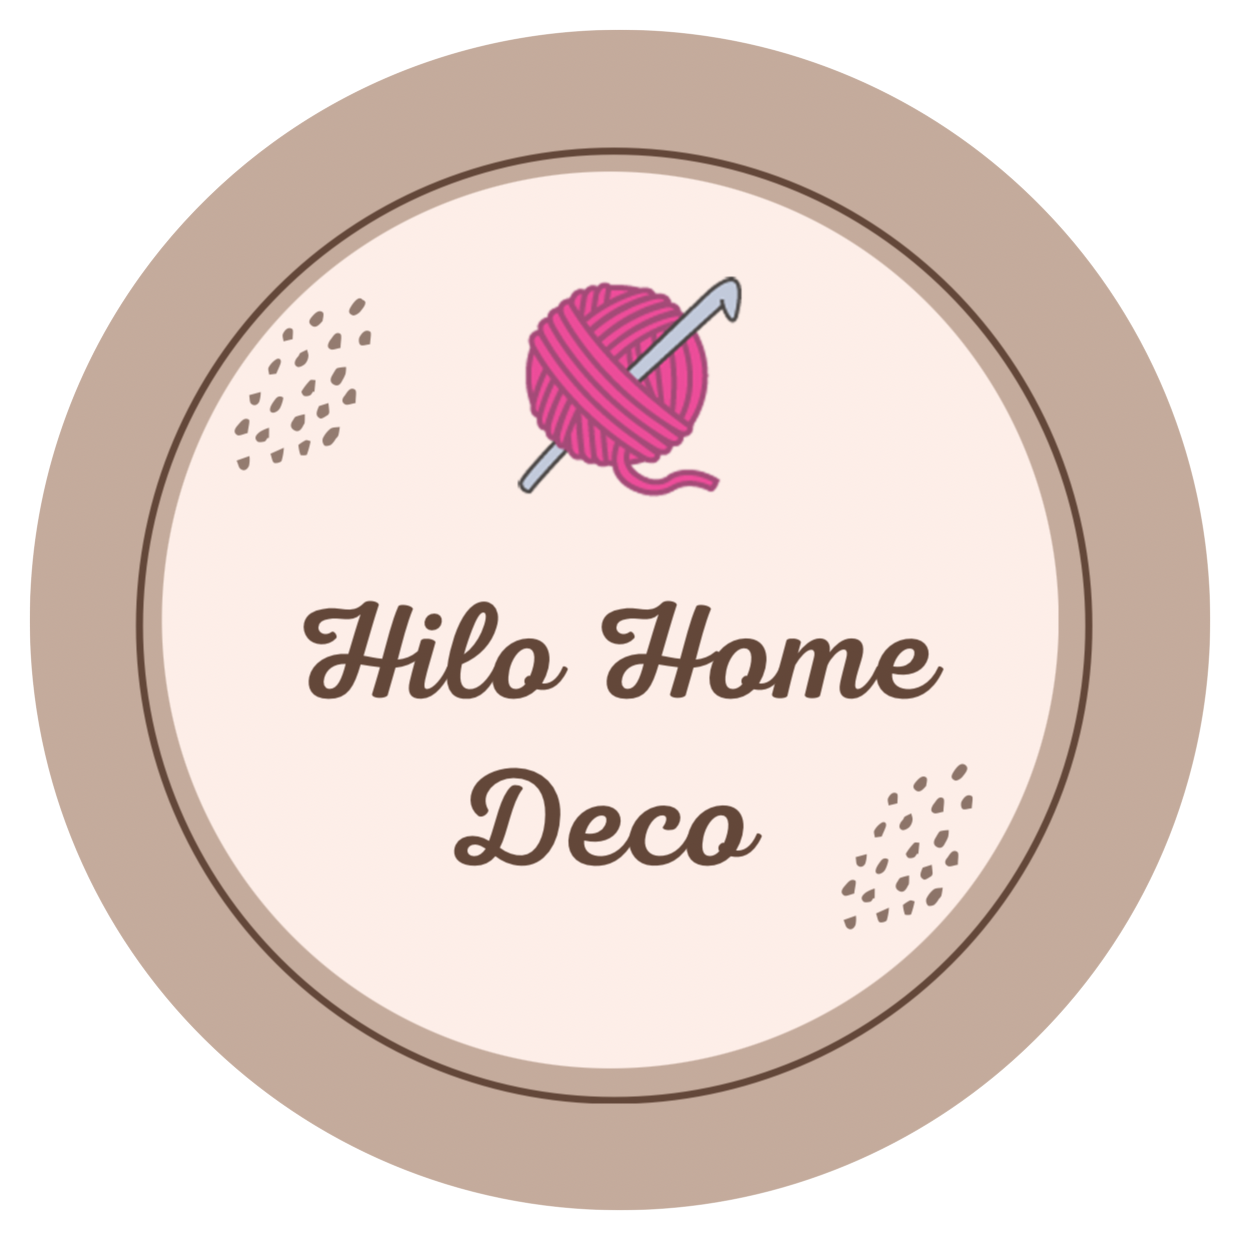 Hilo Home Deco